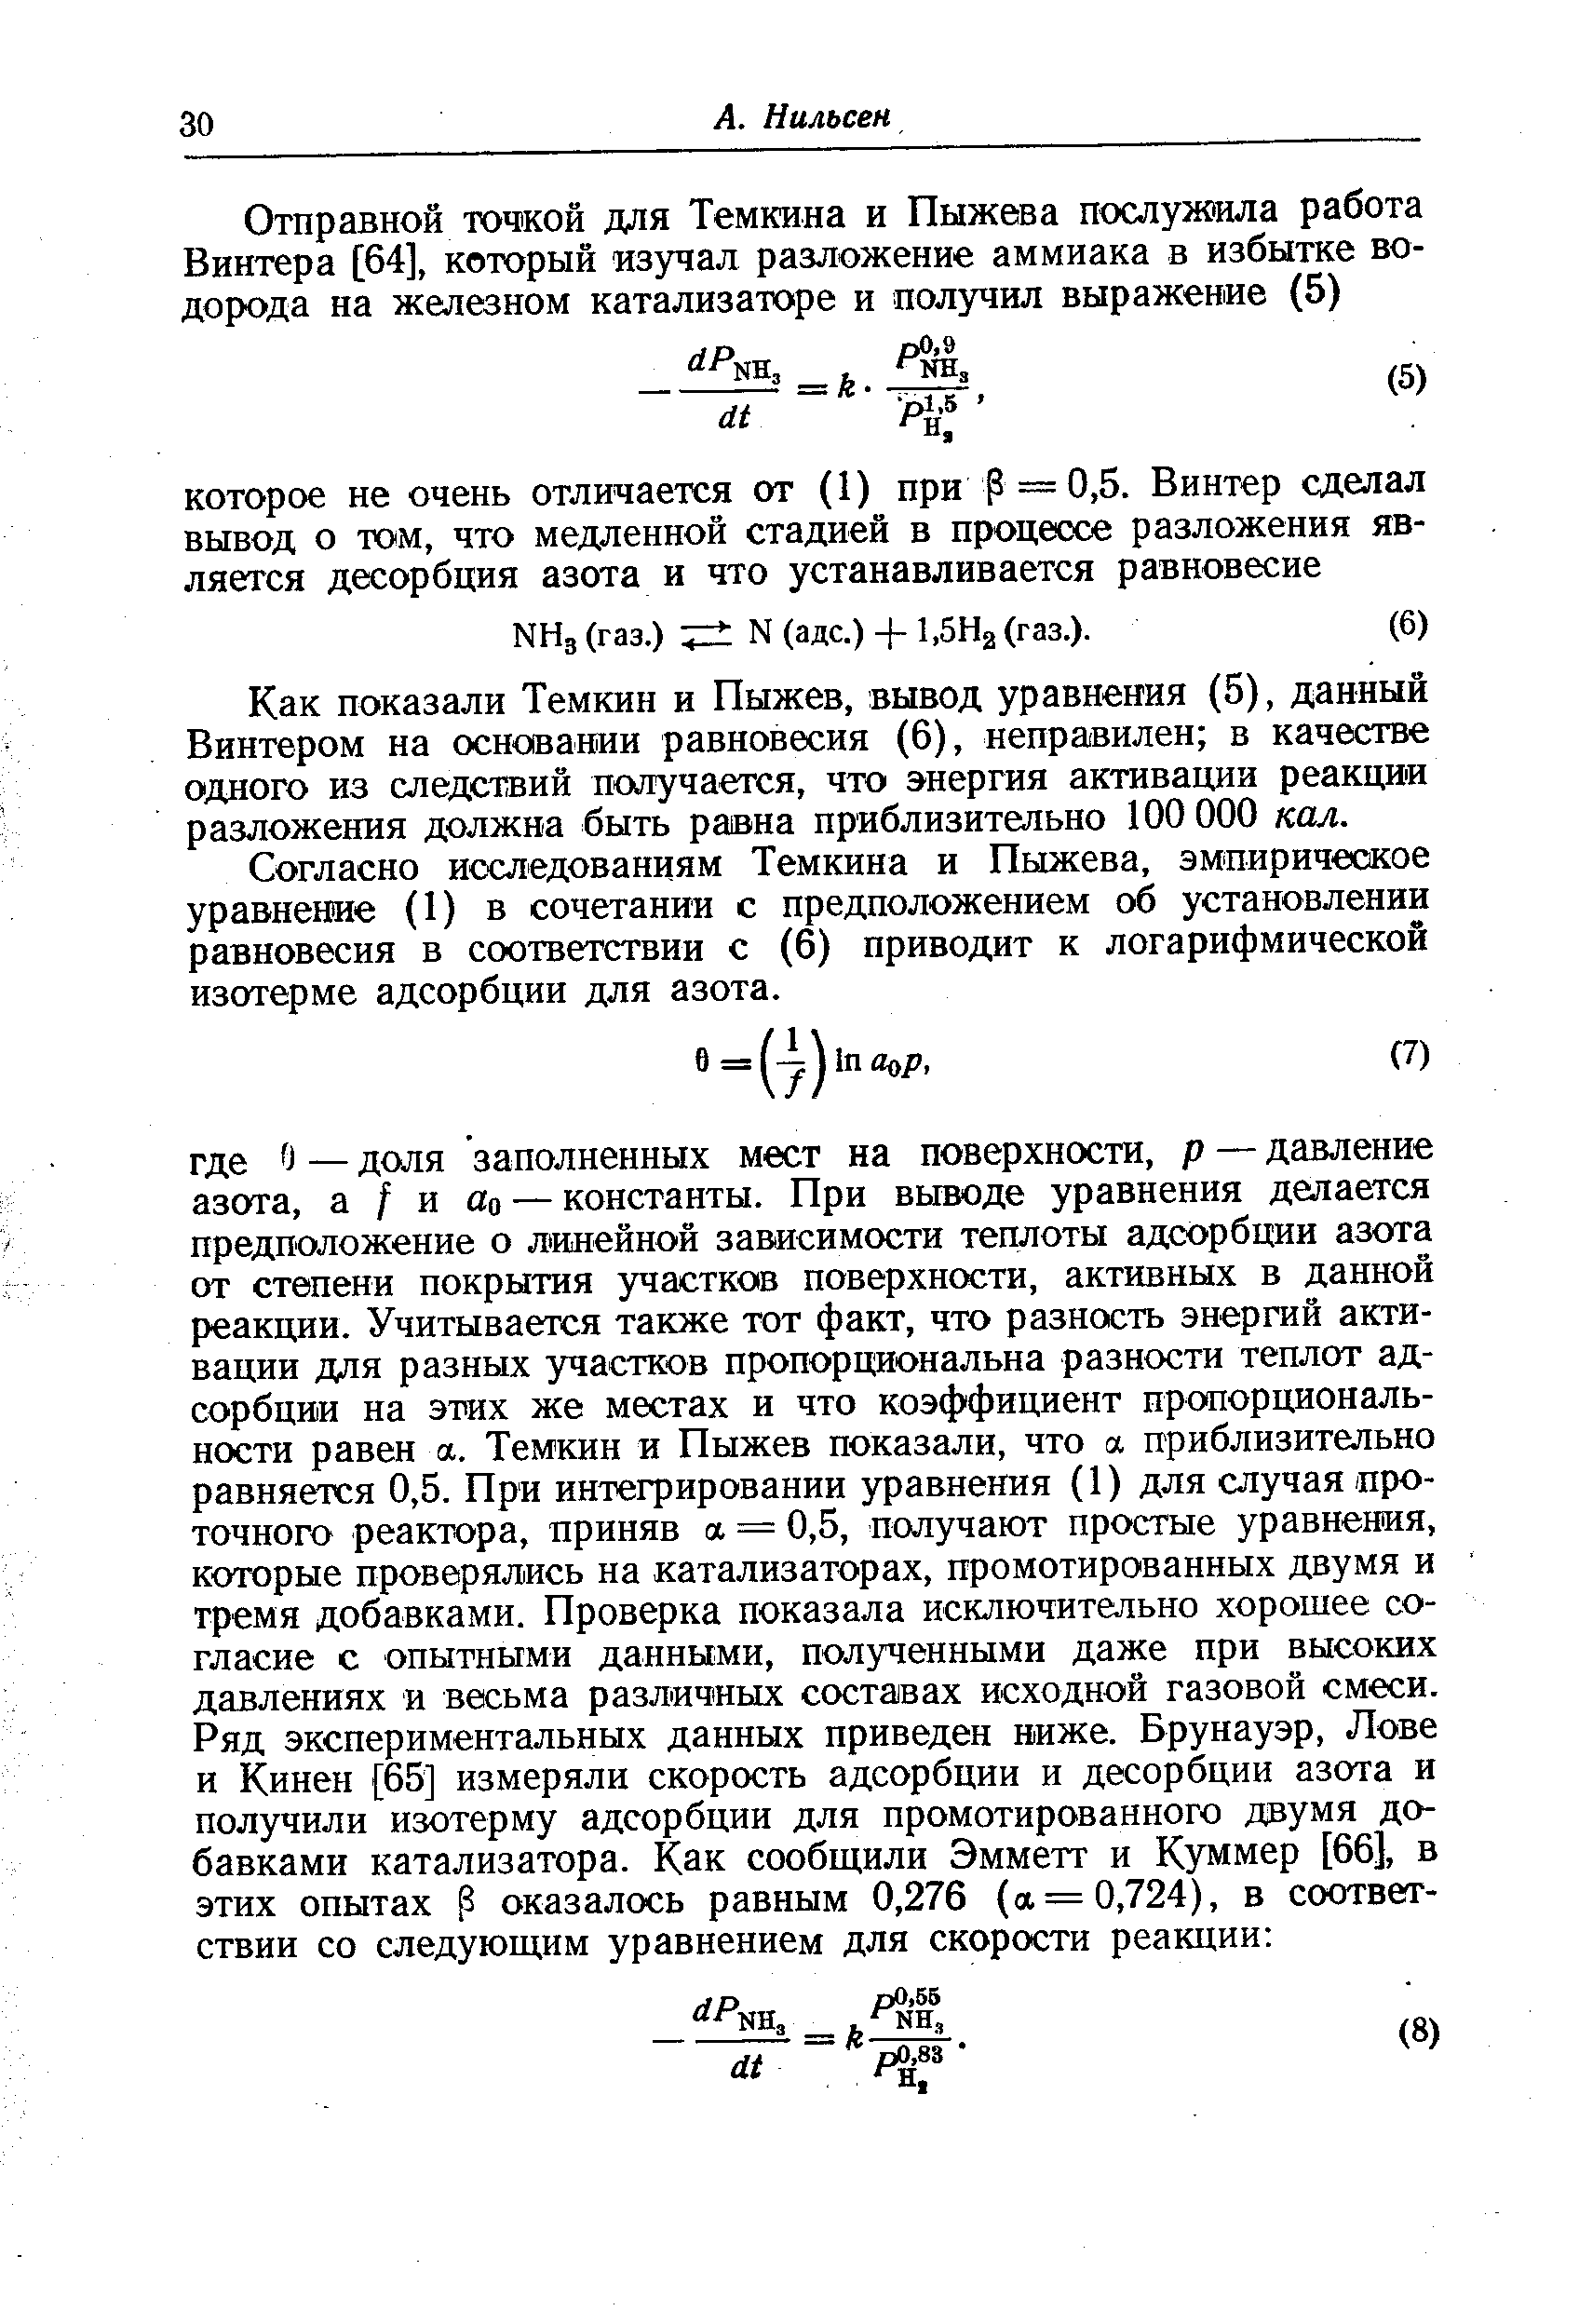 Как показали Темкин и Пыжев, вывод уравнения (5), данный Винтером на основании равновесия (6), неправилен в качестве одного из следствий получается, что энергия активации реакции разложения должна быть равна приблизительно 100 000 кал.